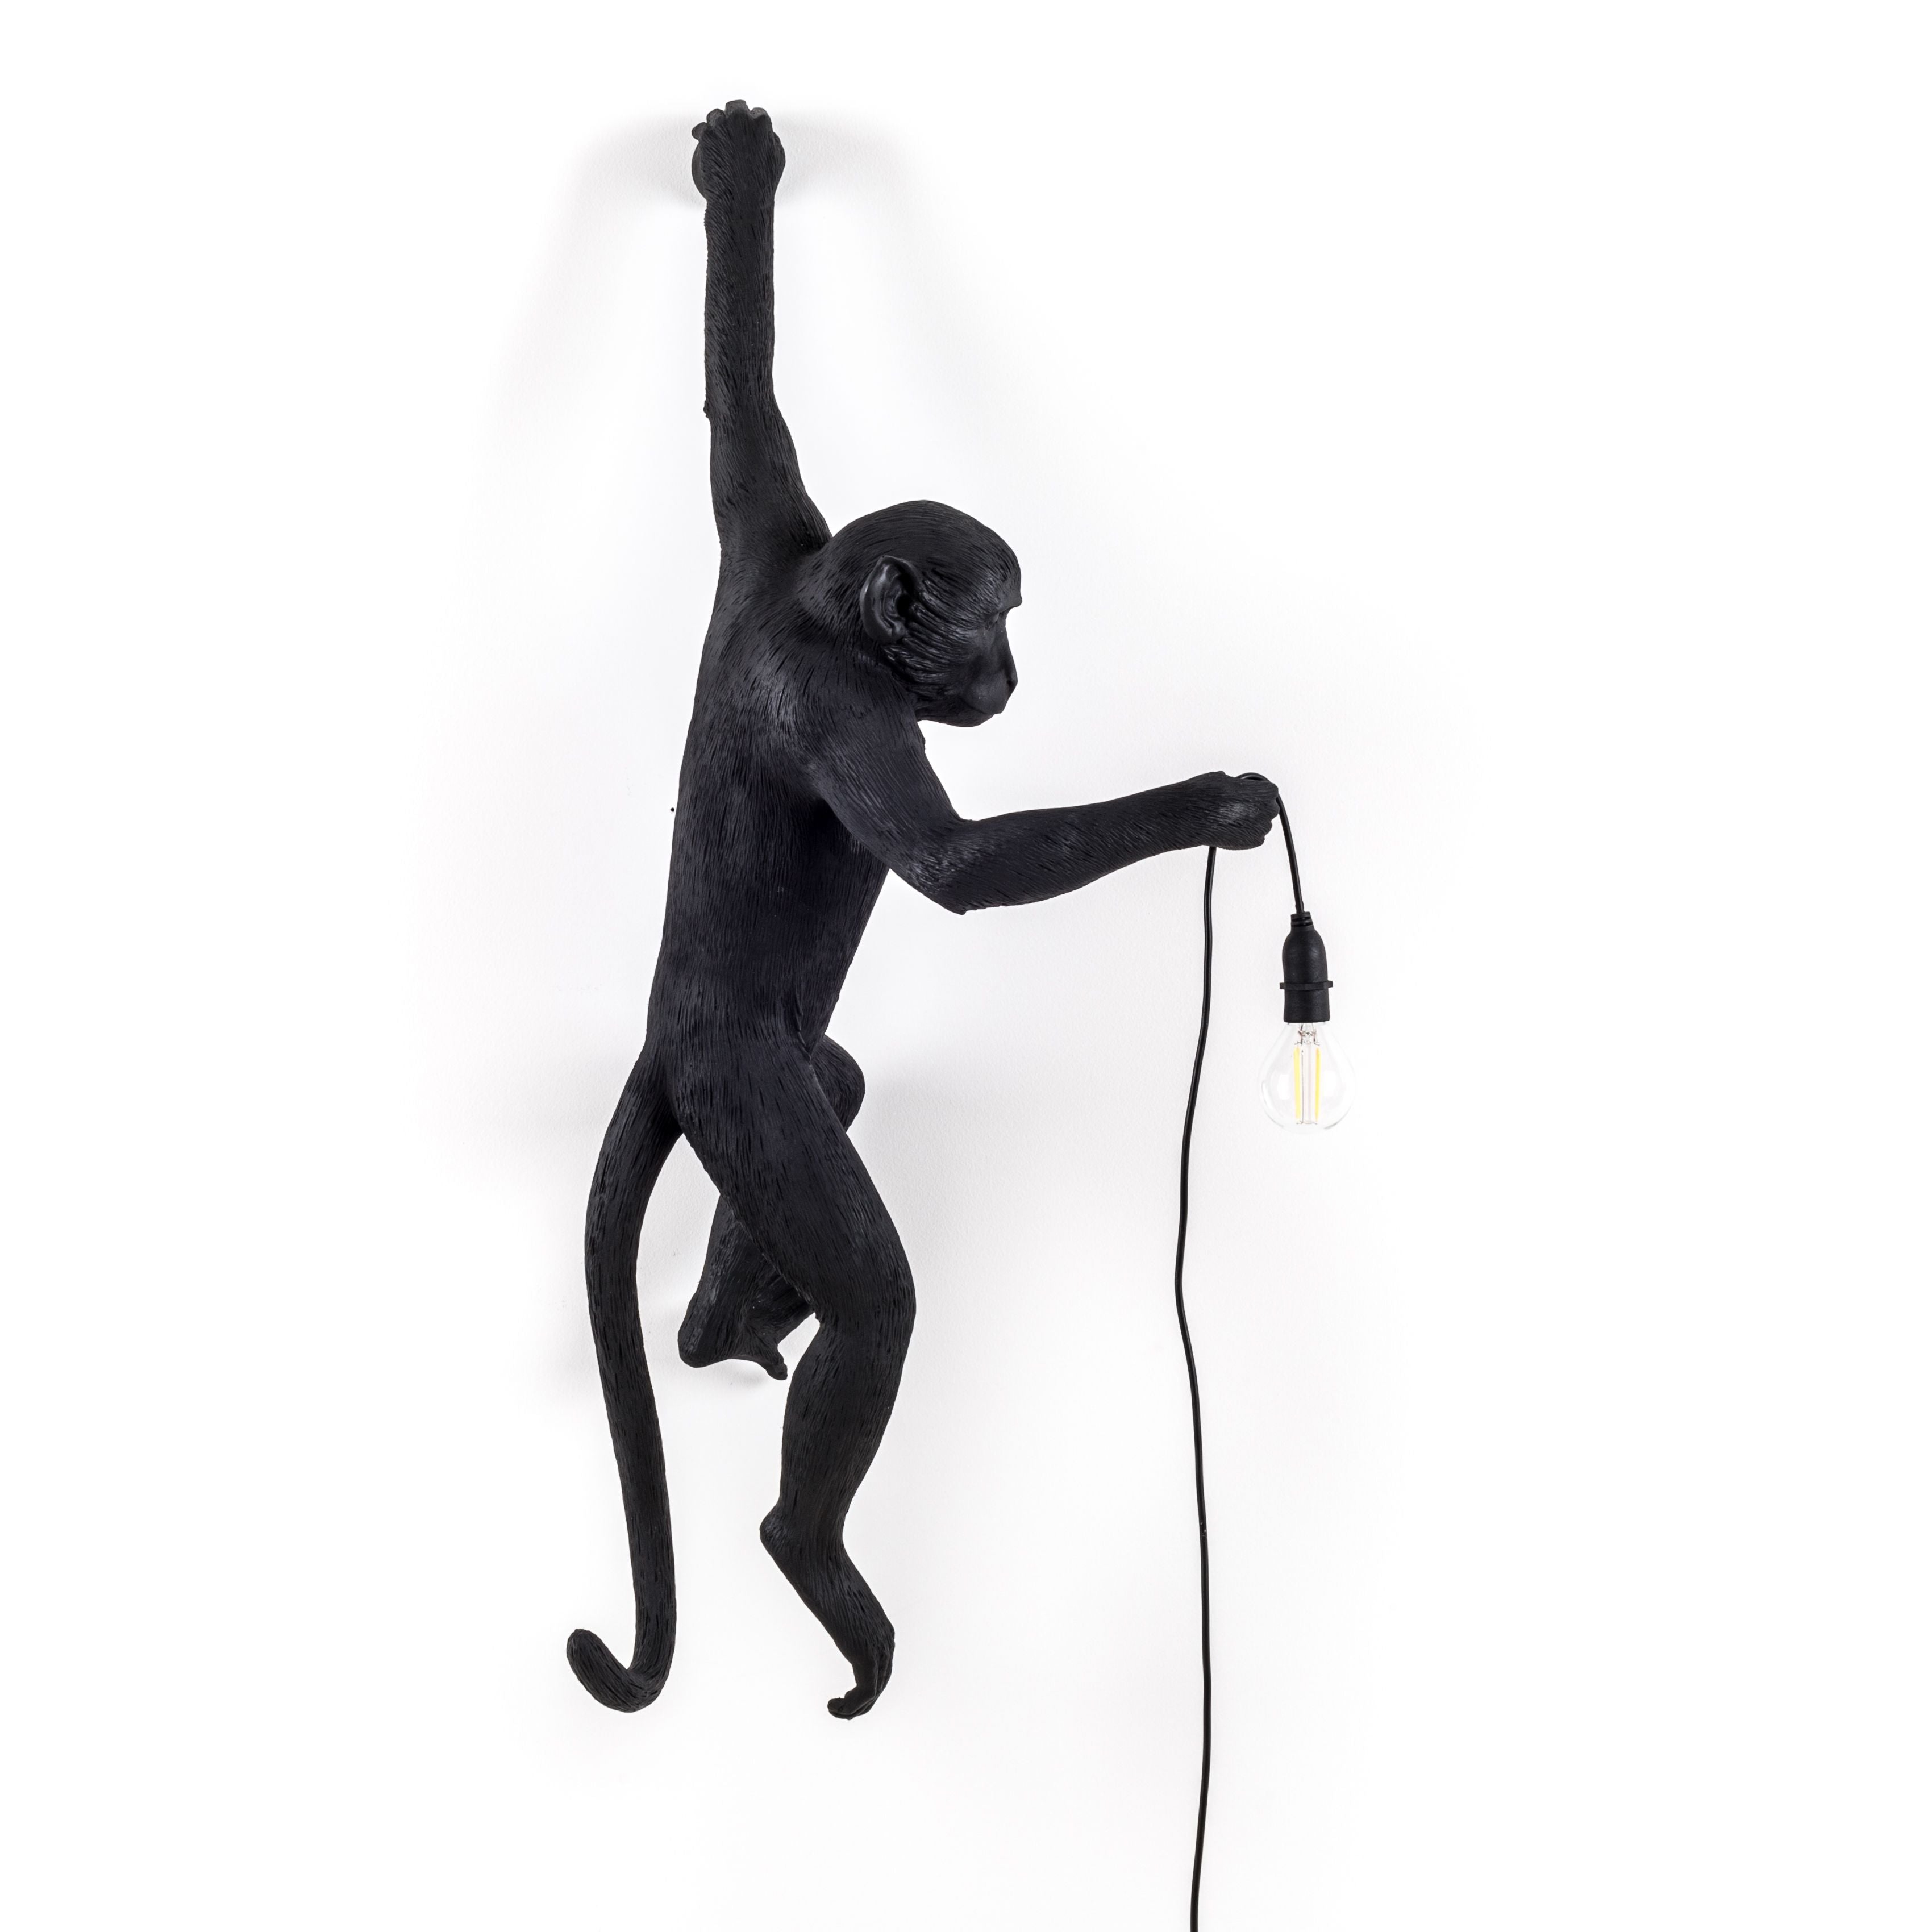 Lampka zewnętrzna Seletti Monkey Black, wisząca lewa ręka